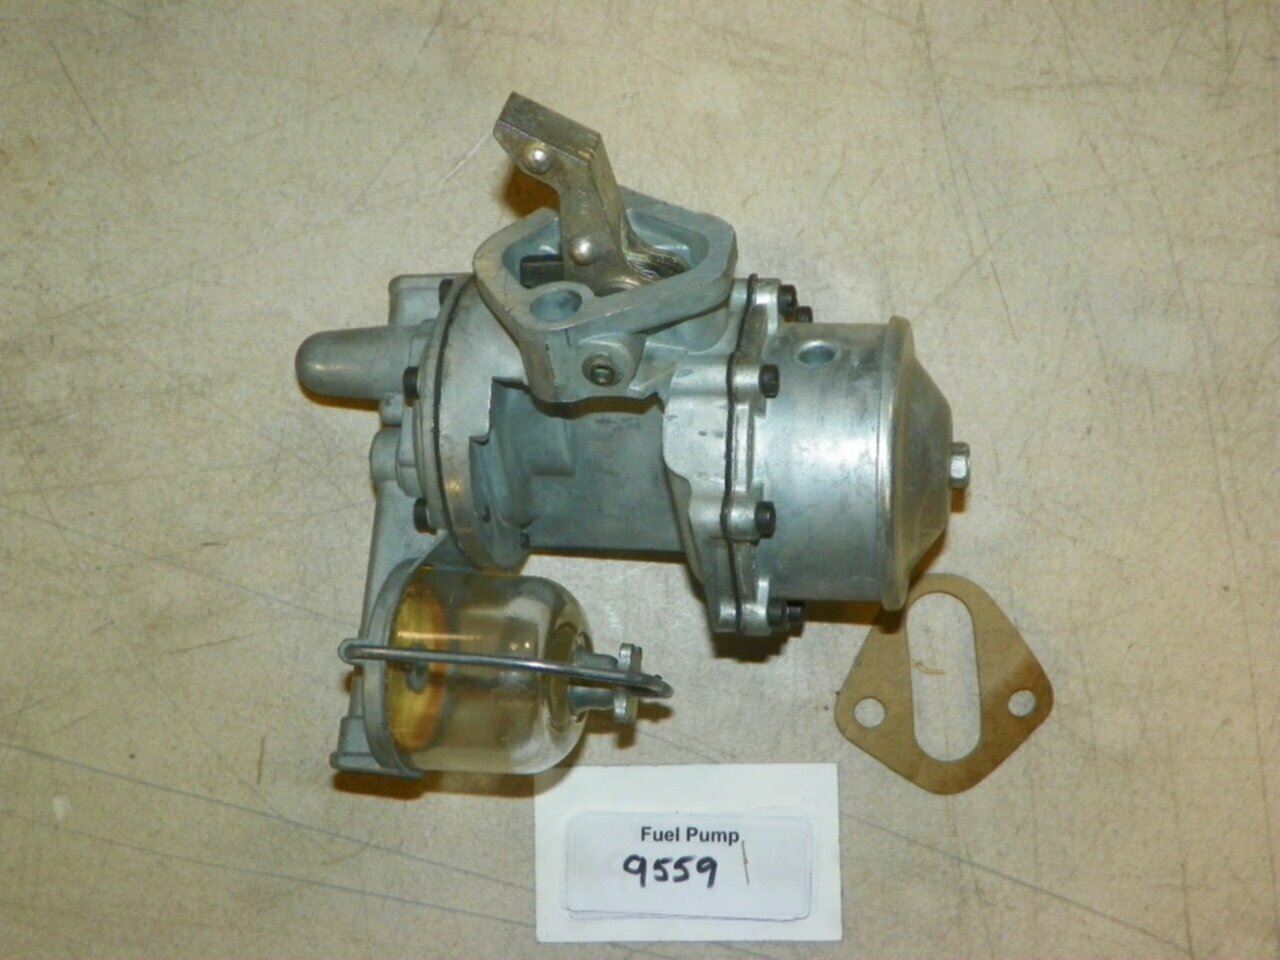 Studebaker 1950-1951 Mechanical Fuel Pump Part No.: 9559